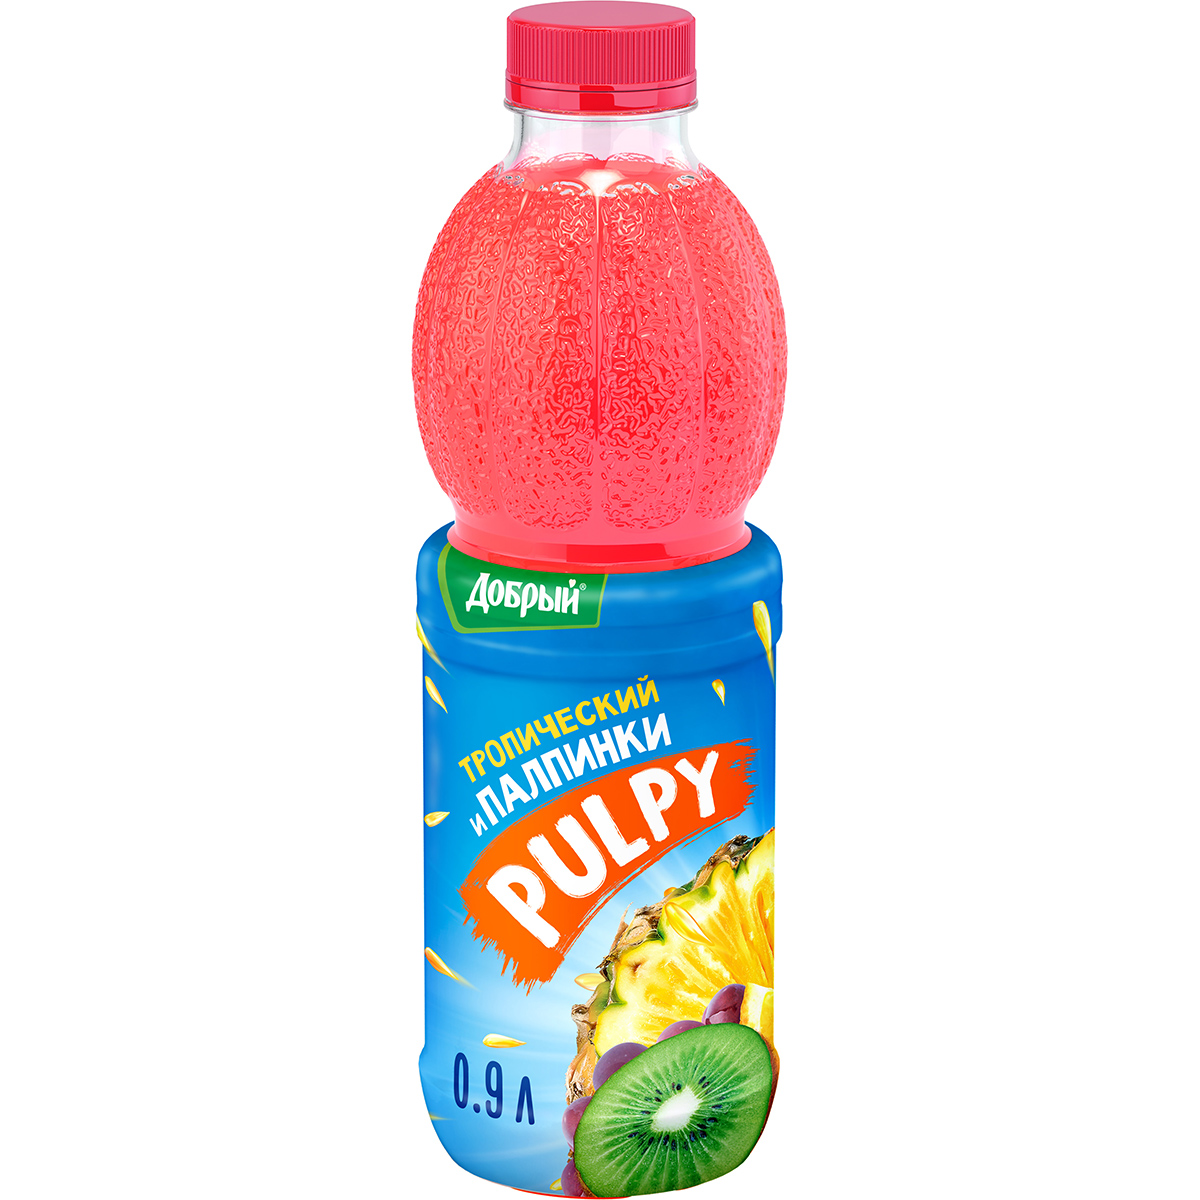 Напиток Pulpy сокосодержащий Тропический с мякотью 0,9 л напиток сокосодержащий pulpy вишня 0 9 л